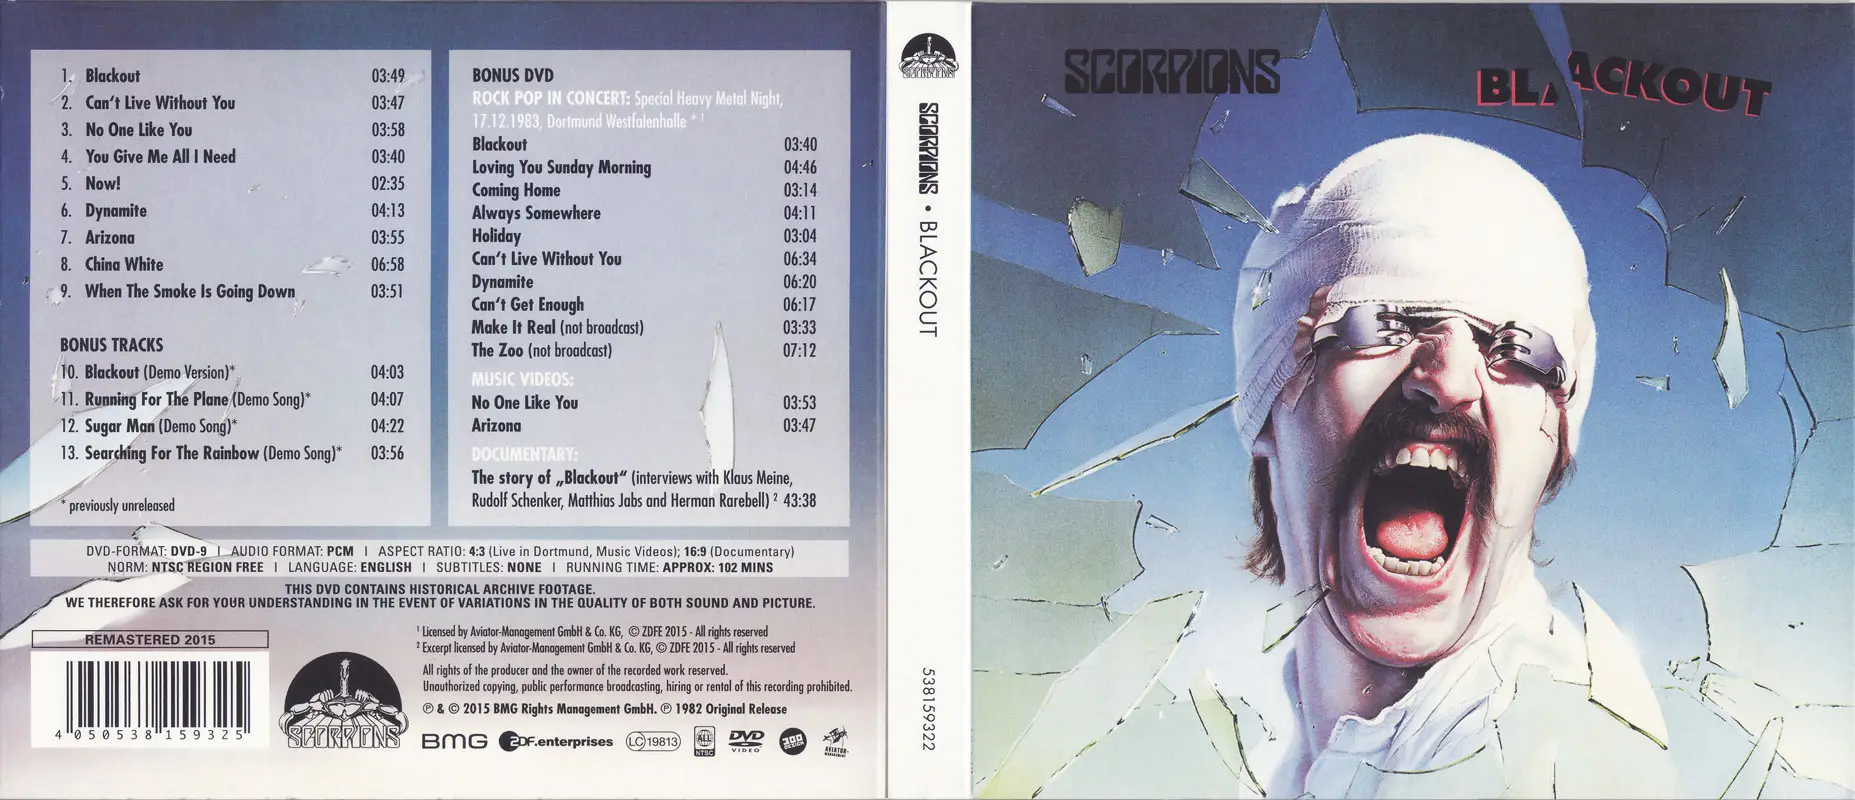 Scorpions flac. Scorpions 1982 Blackout Vinyl. Scorpions - Blackout (1982) LP. Scorpions 1982 Blackout обложка альбома. Пластинка 1982 Scorpions.